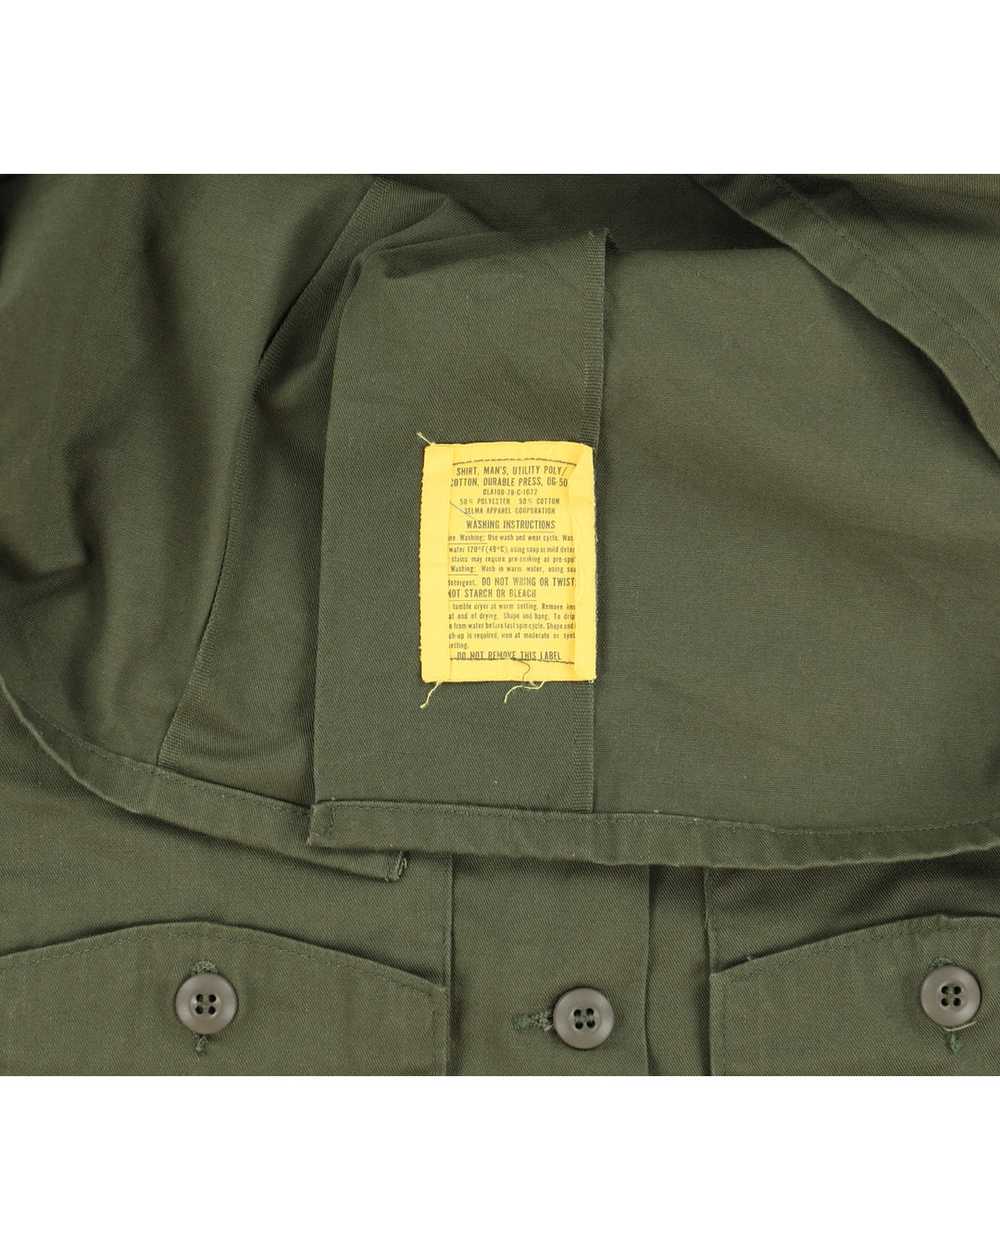 70s Vintage US Army OG-507 Shirt - M - image 4